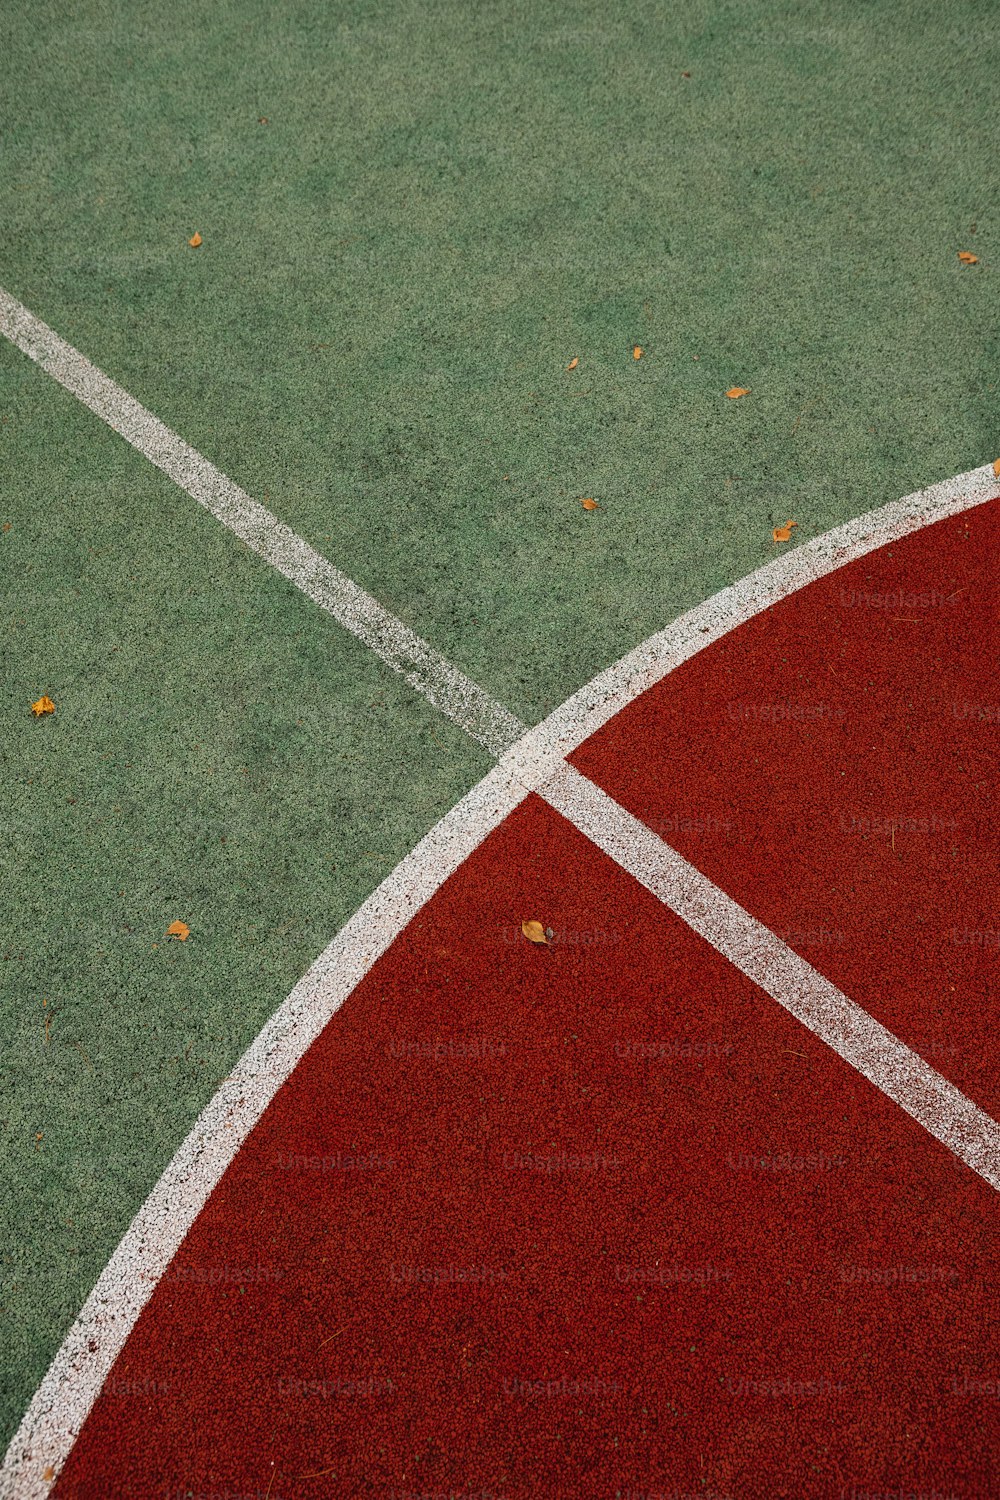 un primo piano di un campo da tennis con una racchetta da tennis